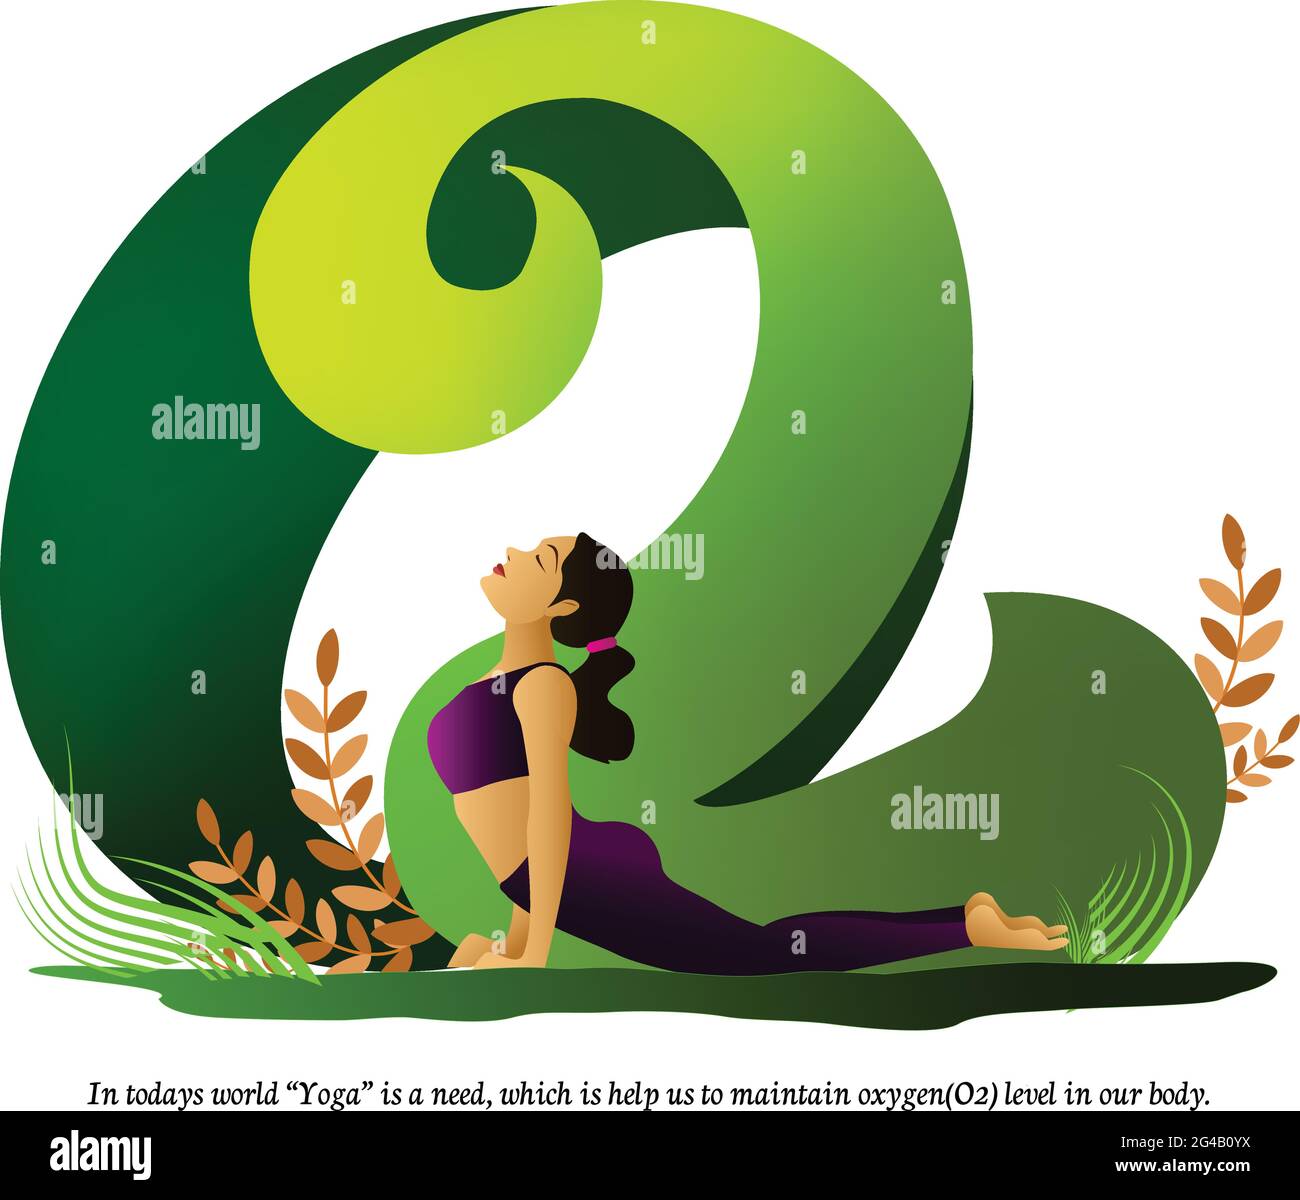 l'illustrazione della giornata di yoga con il verde indica la giovane ragazza che fa yoga per mantenere il livello di ossigeno nel suo corpo. Illustrazione Vettoriale